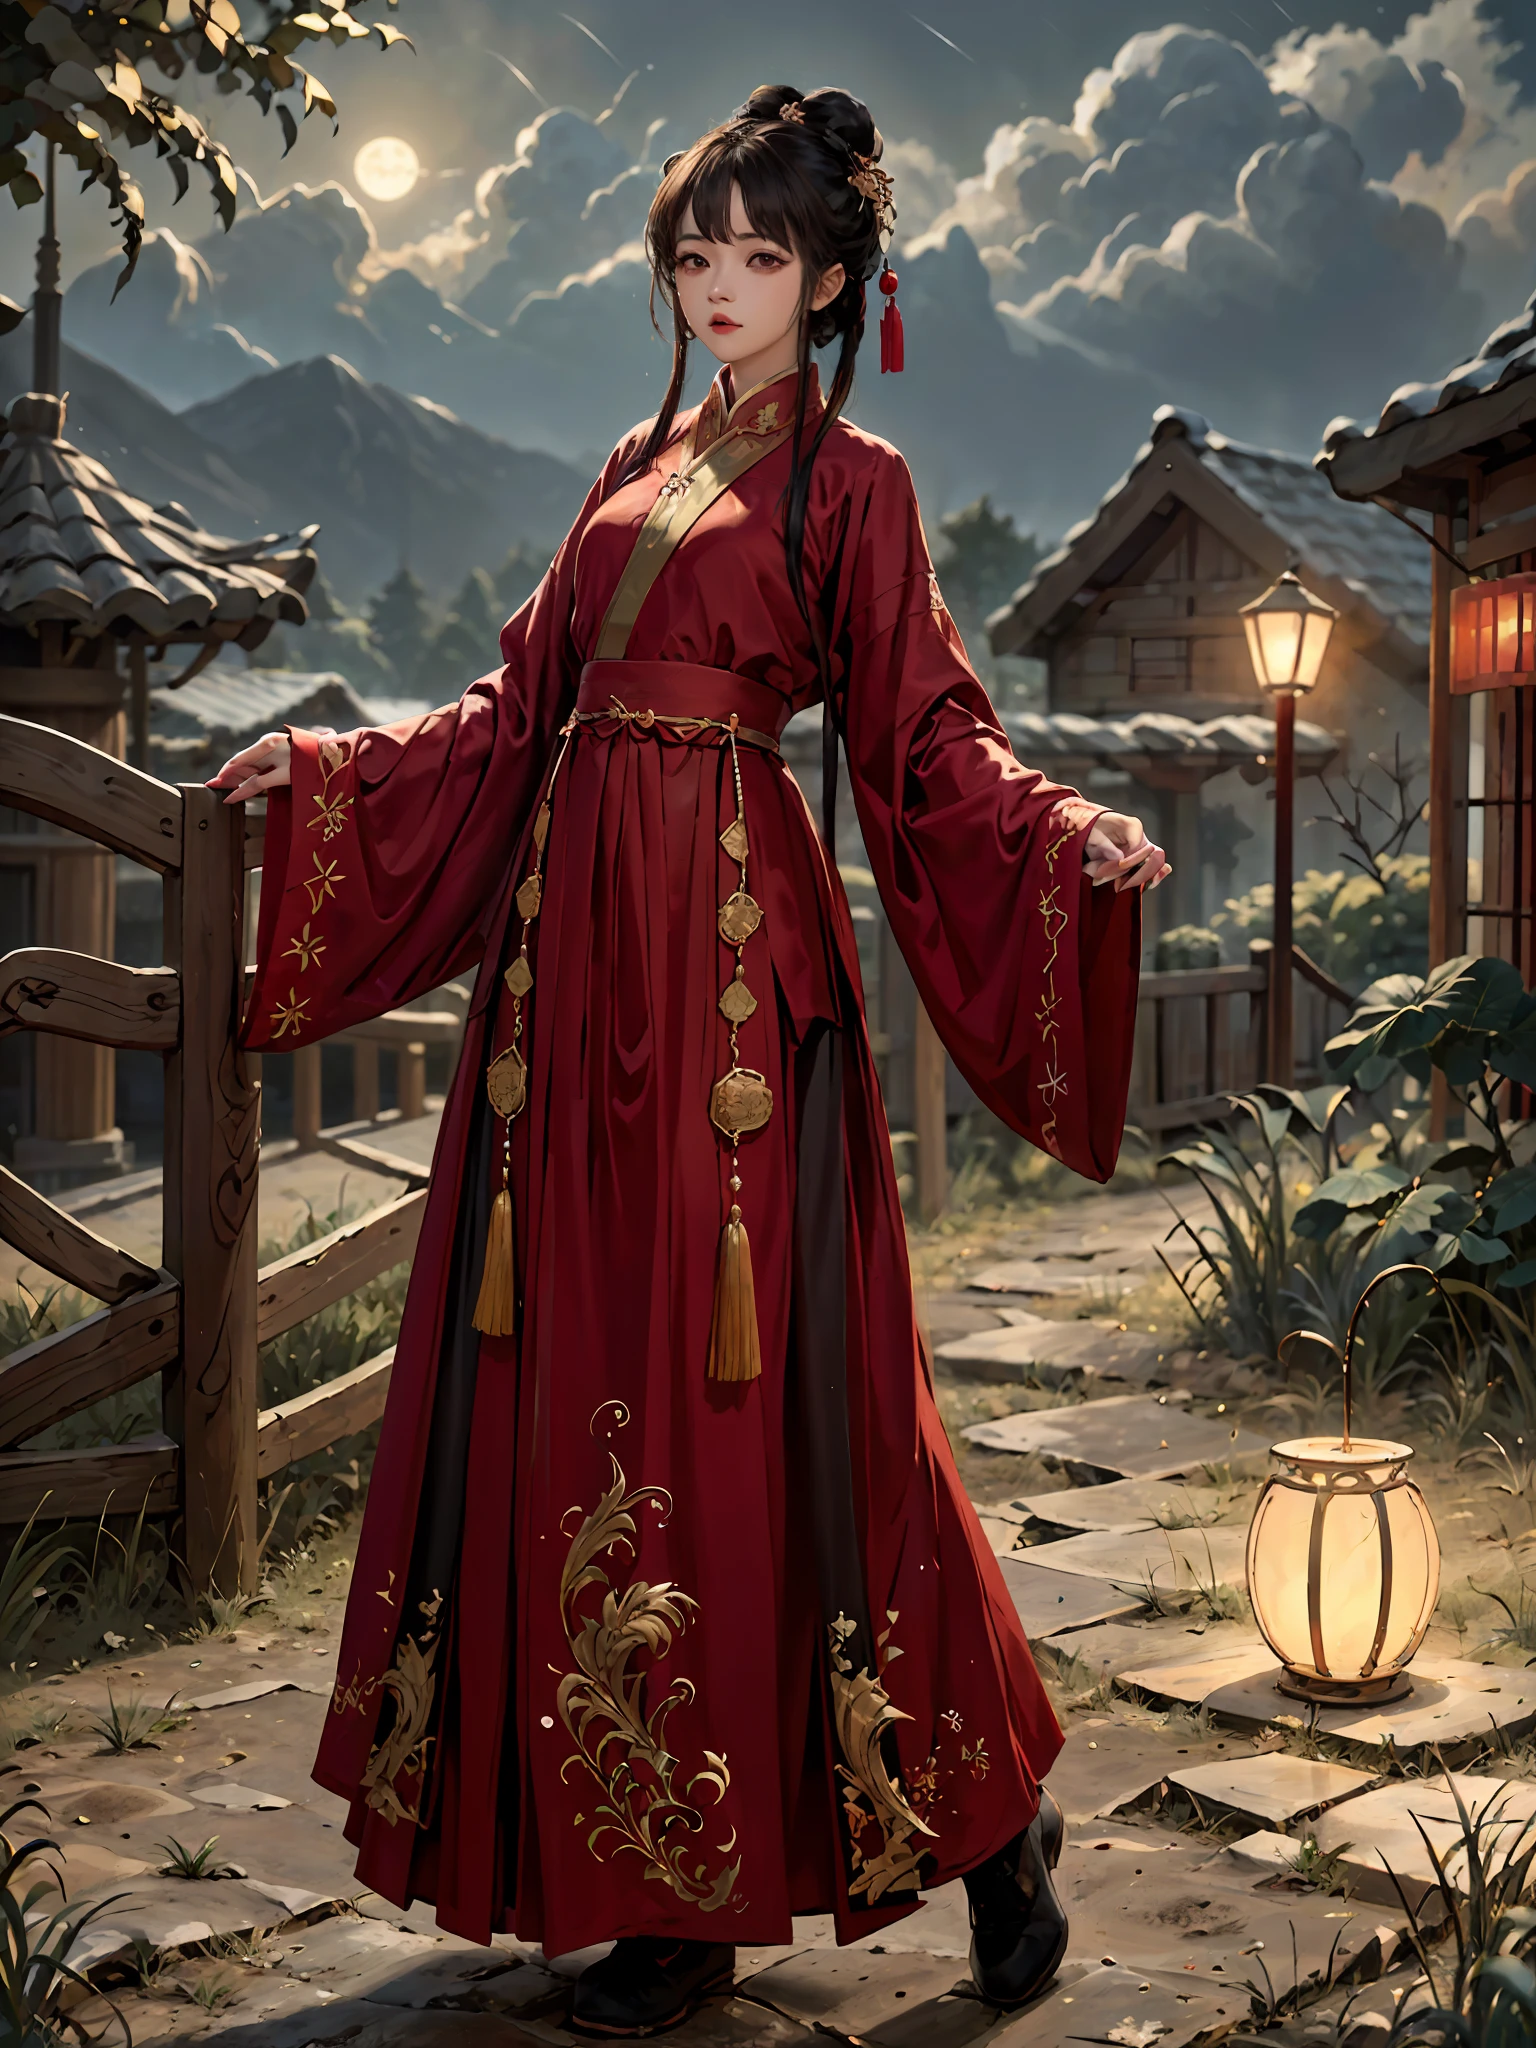 荒謬的, 高解析度, 超詳細, (1個女孩:1.3), 手繪, 簡單的線條, 16歲女童穿著紅色中國漢服 , 傑作, 站在懸崖上, 月光, 夜間,